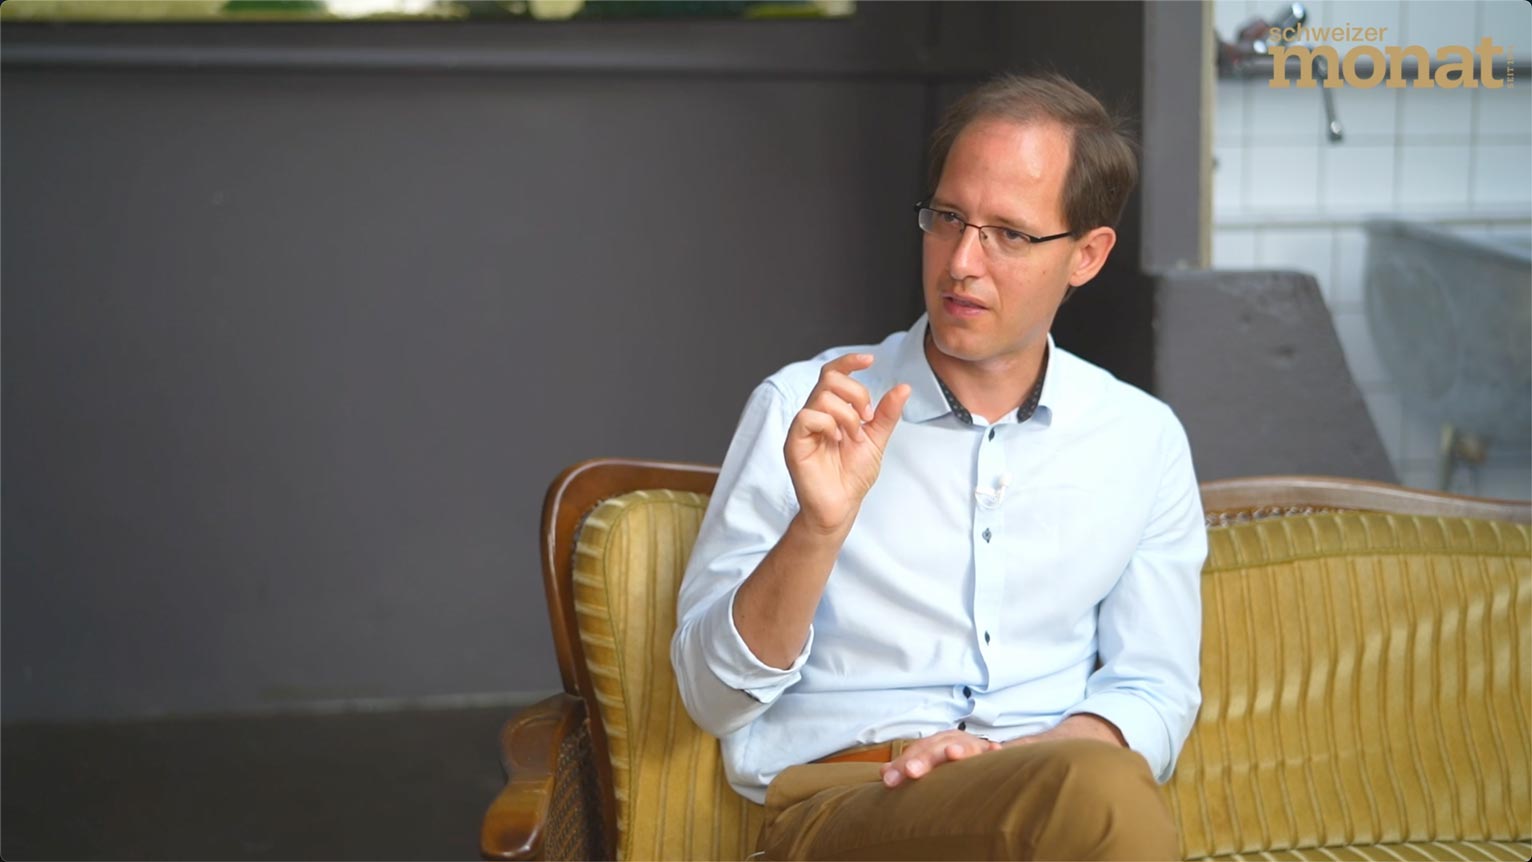 Florian Scheuer, UBS Foundation Professor of Economics of Institutions